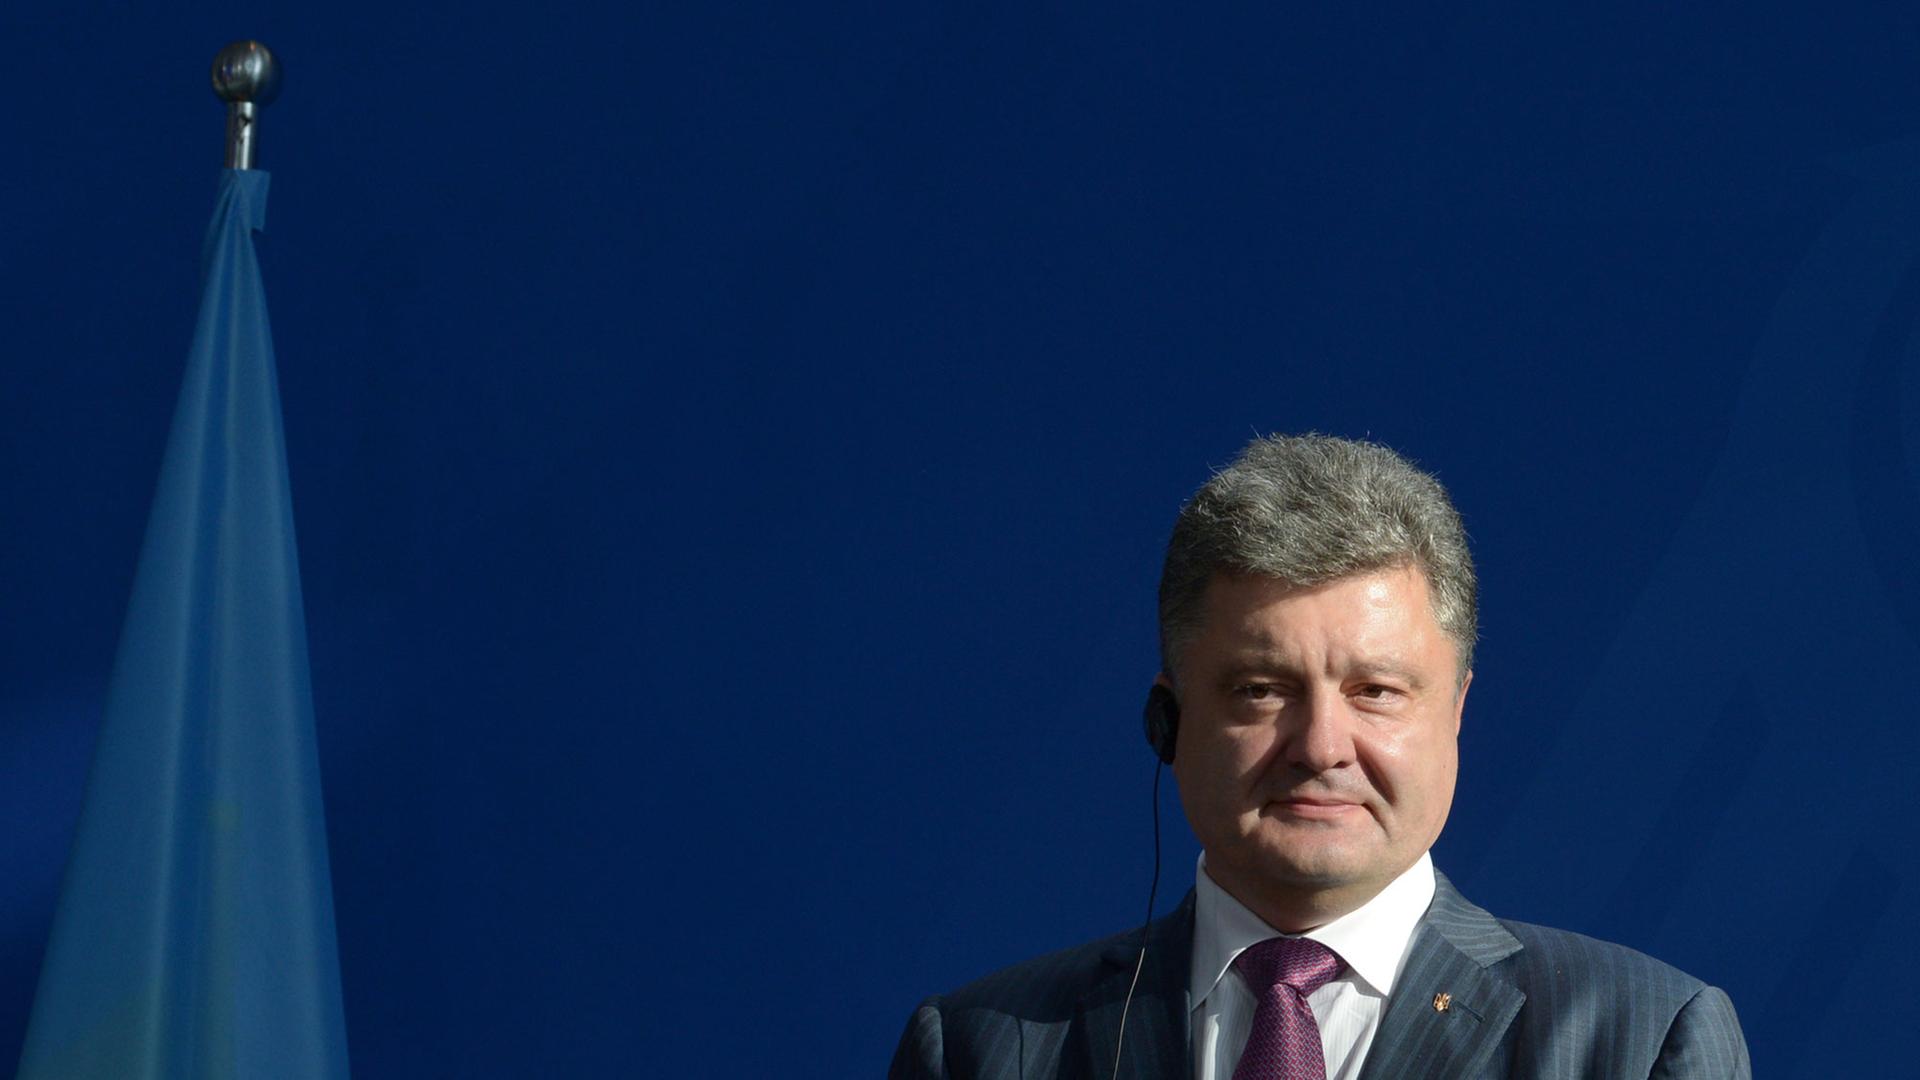 Der neue ukrainische Präsident Petro Poroschenko.